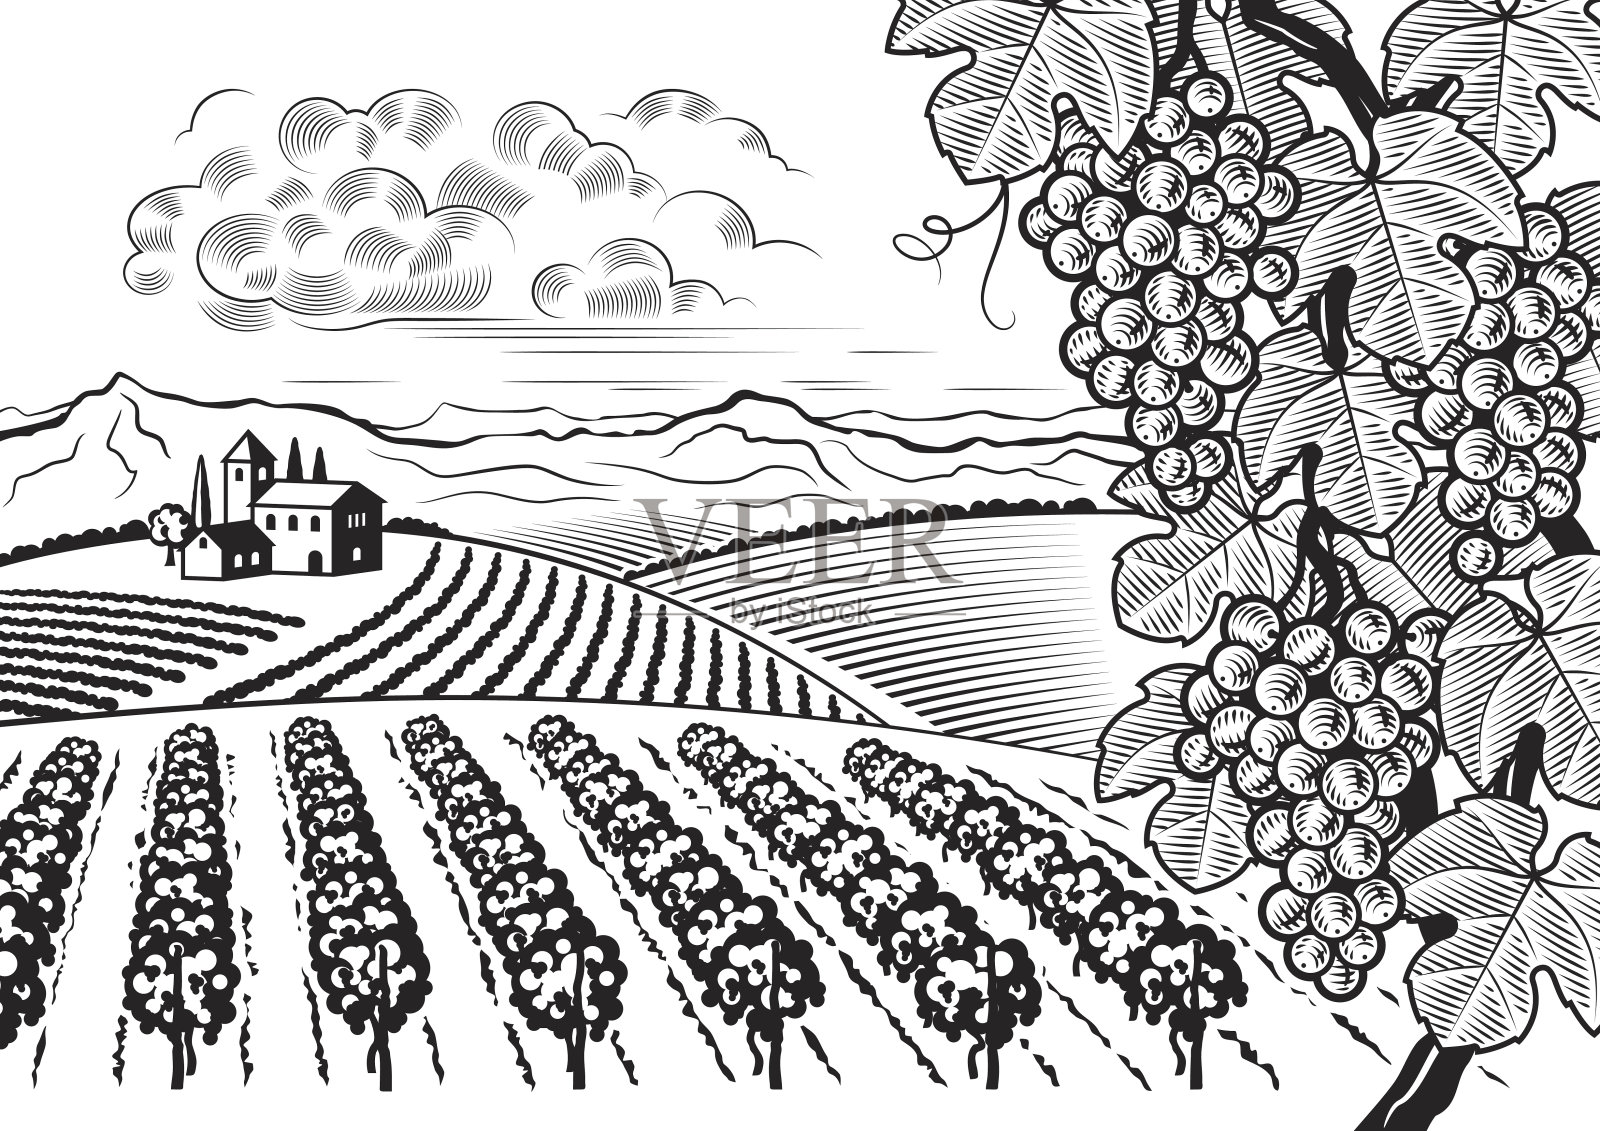 黑色和白色的葡萄园山谷景观插画图片素材